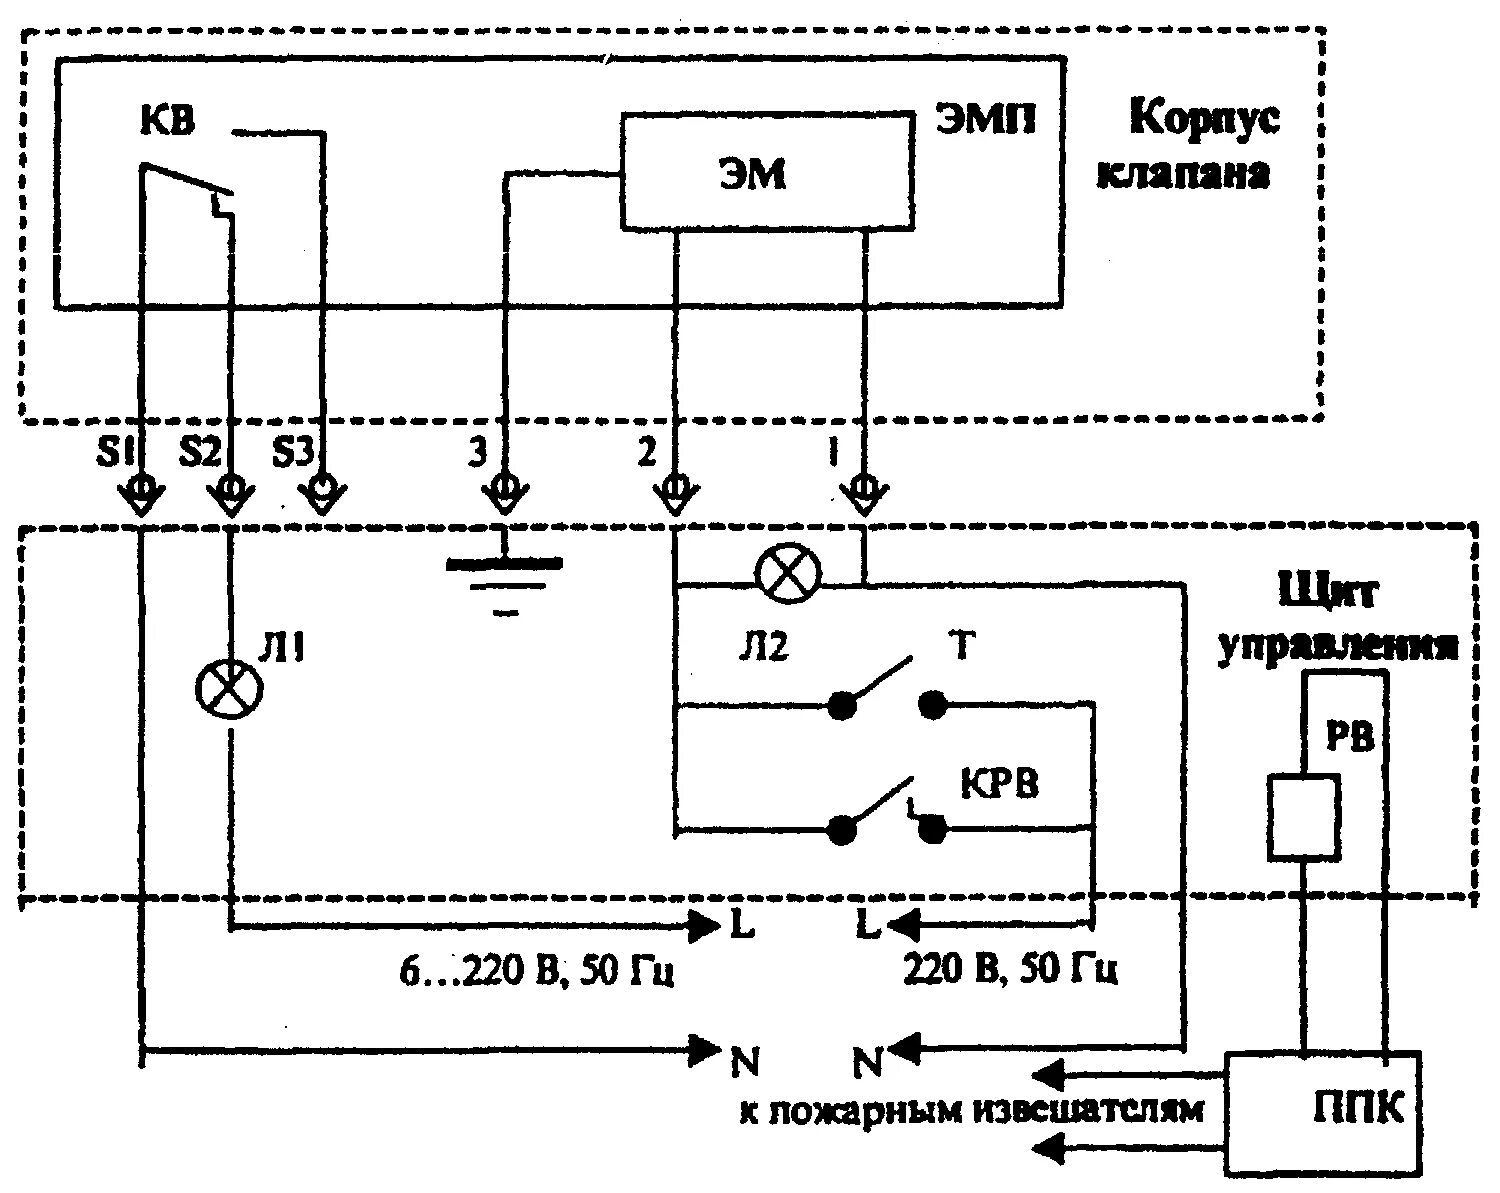 Электро магнитные полы. Клапан дымоудаления КДМ-2 схема подключения. ЭМП-к1 электромагнитный схема подключения. ЭМП-к1 электромагнитный привод схема подключения. ЭМП-к1(220 в) электромагнитный привод.